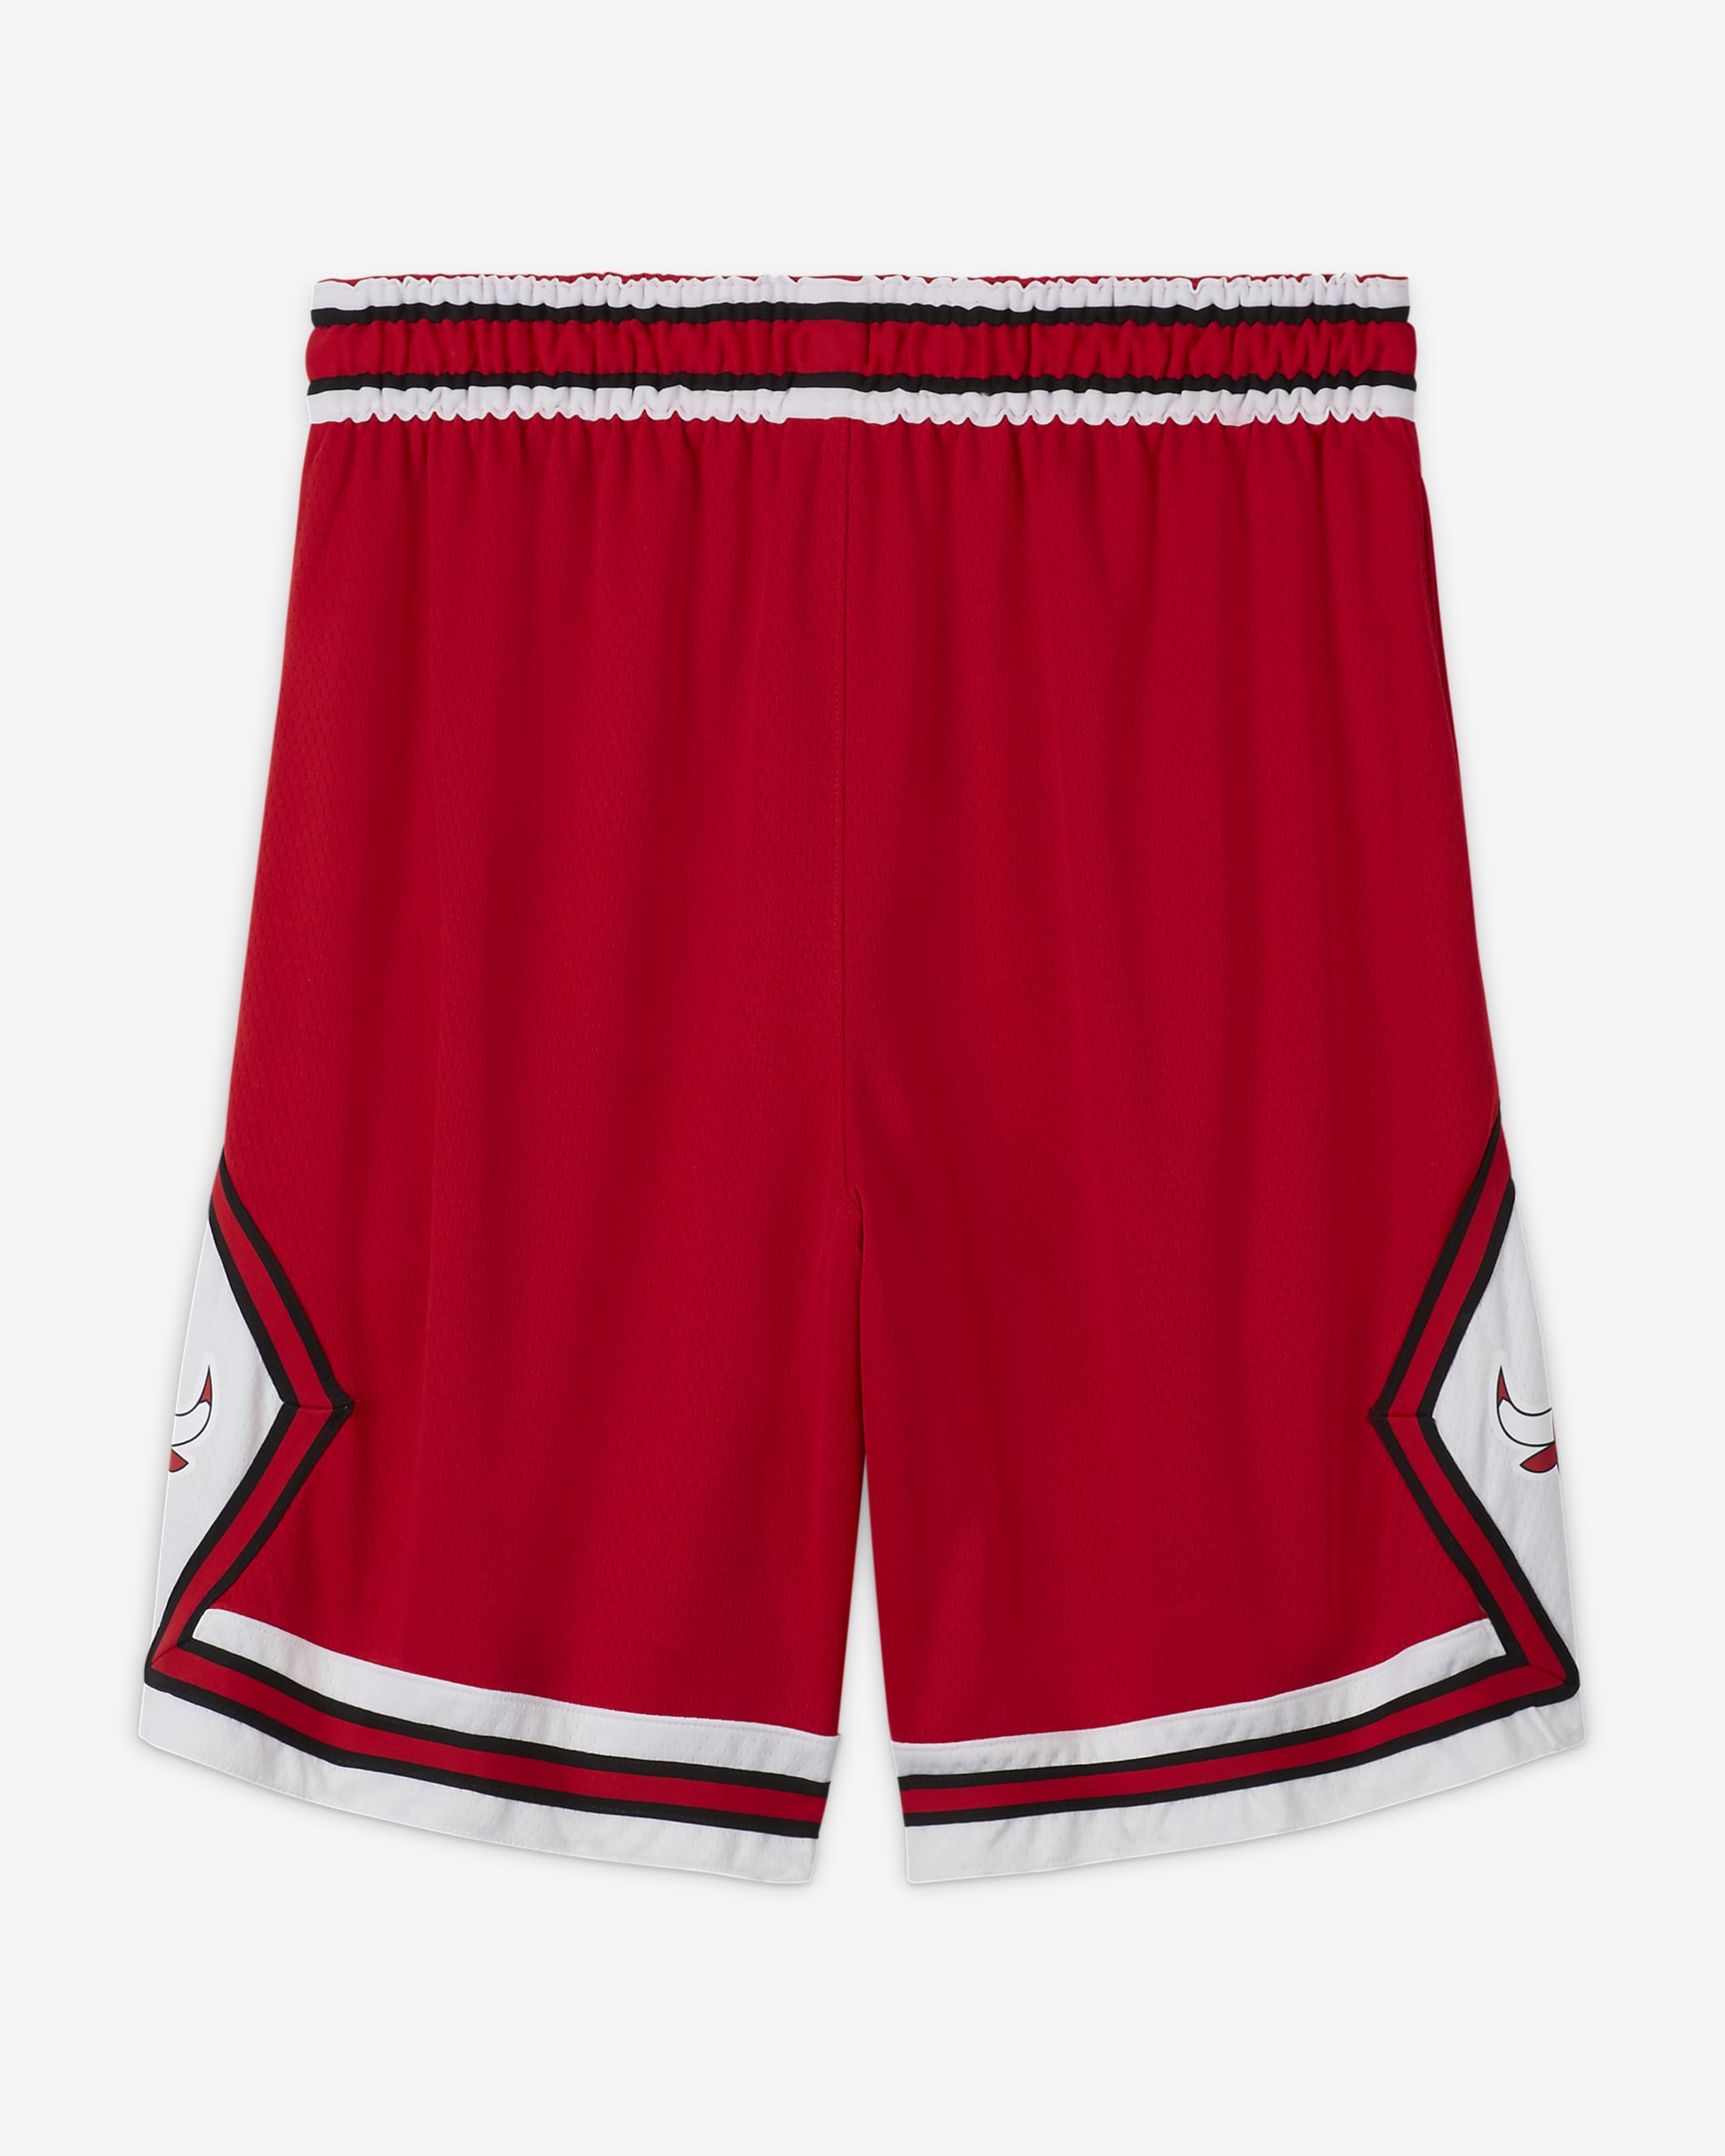 Chicago Bulls Icon Edition Men's Nike NBA Swingman Shorts. Nike BG